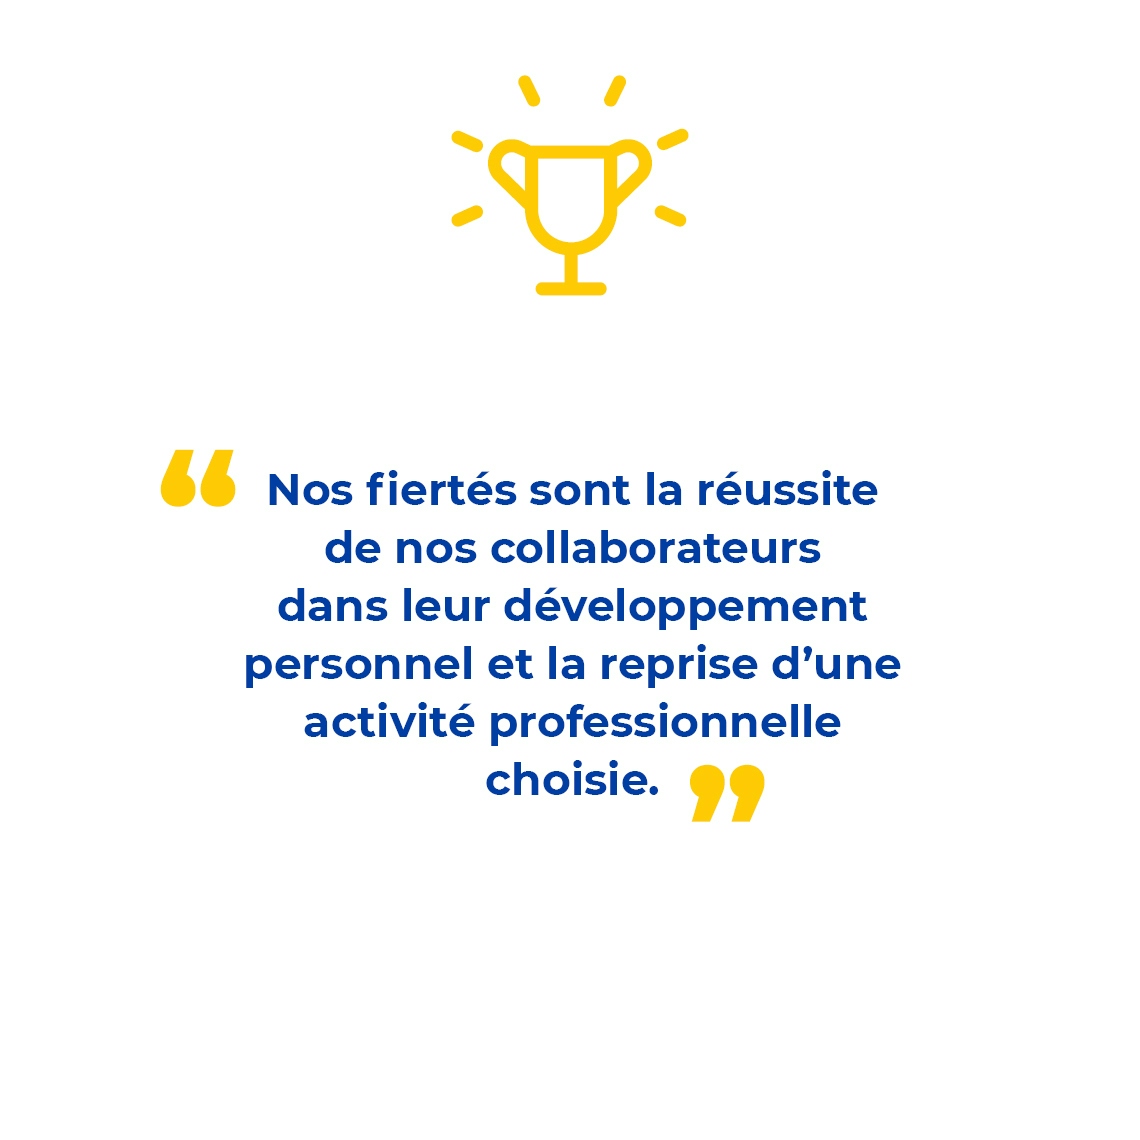 Infographie avec texte : "Nos fiertés sont la réussite de nos collaborateurs dans leur développement personnel et la reprise d’une activité professionnelle choisie. "